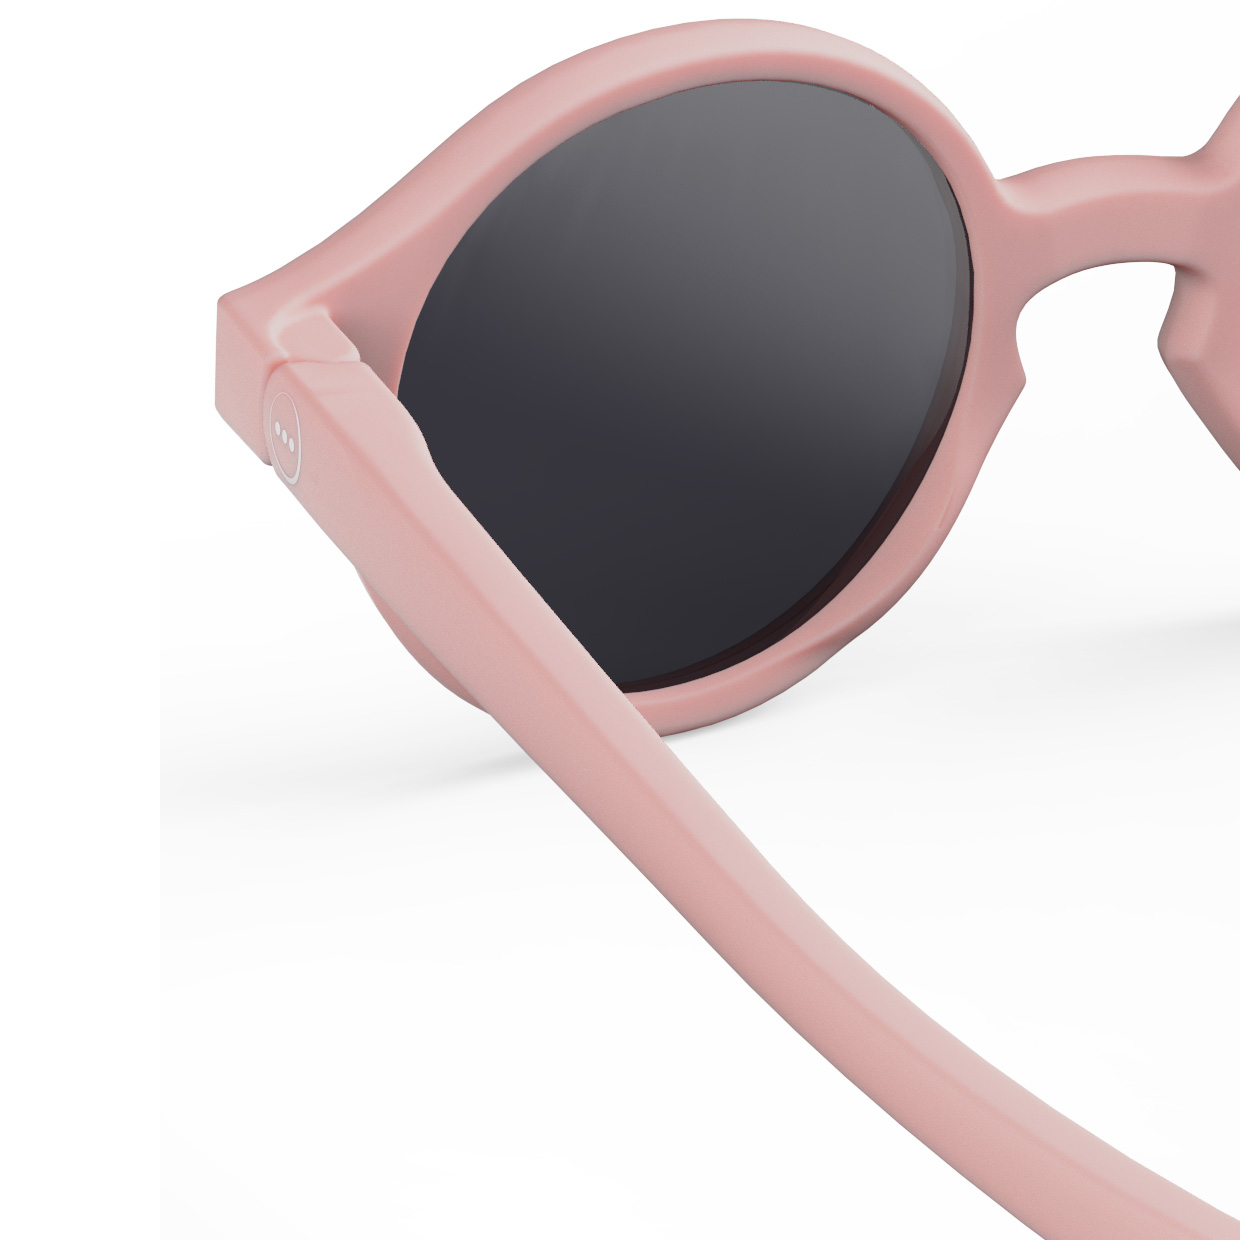 Sonnenbrille Kids Pastel Pink (9-36M)